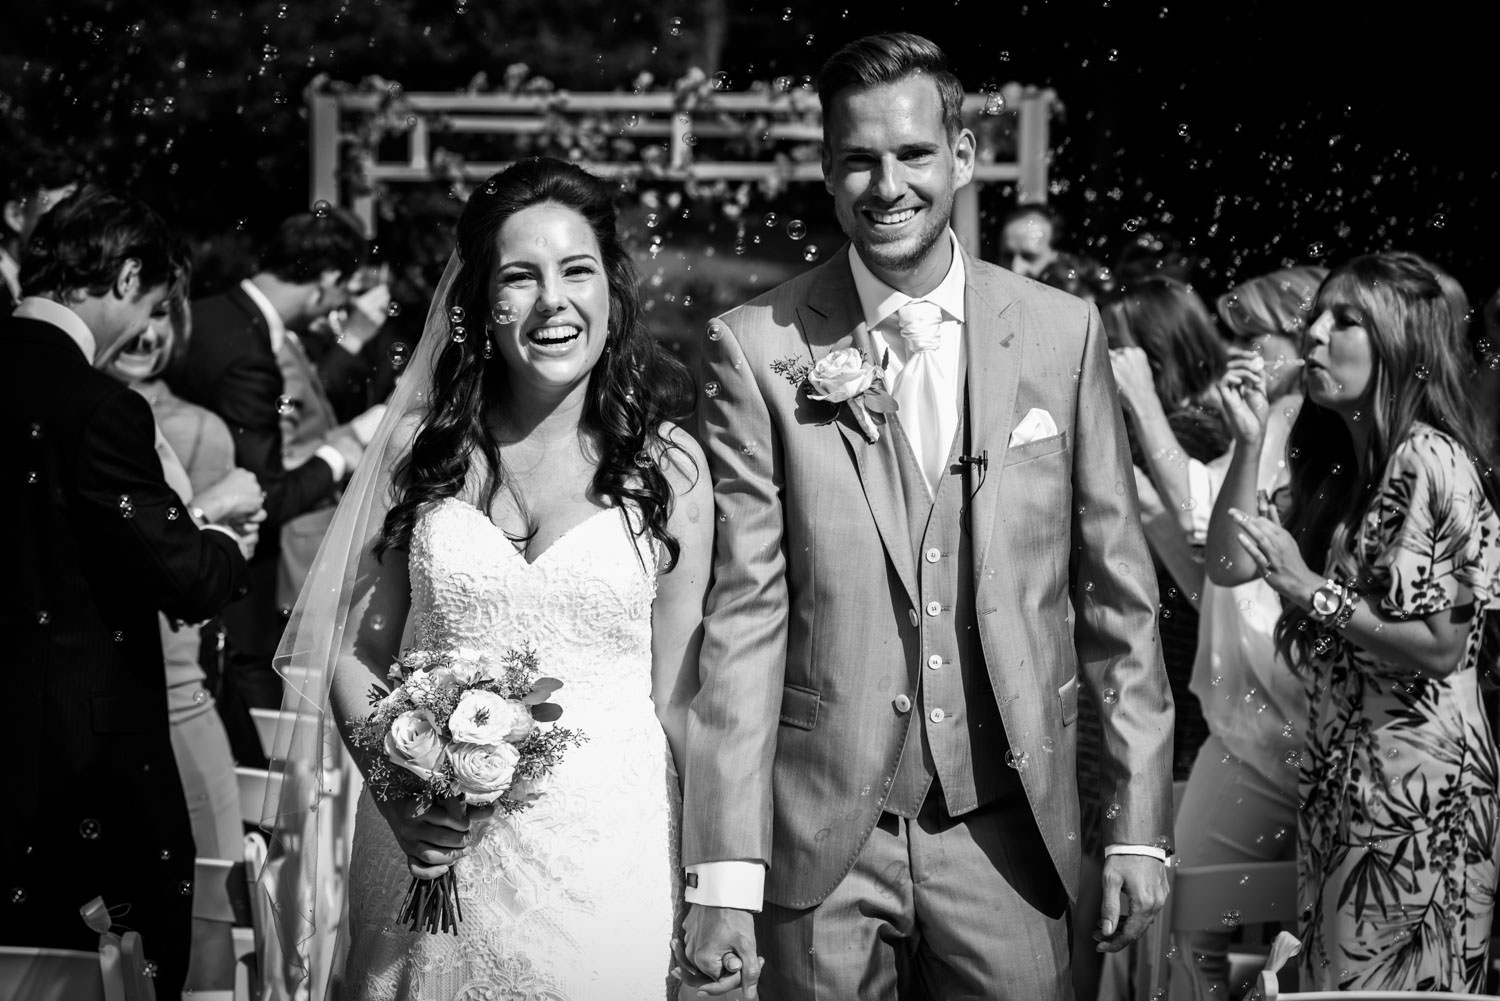 Cfoto legt met trouwfotografie de vreugde van het bruidspaar vas